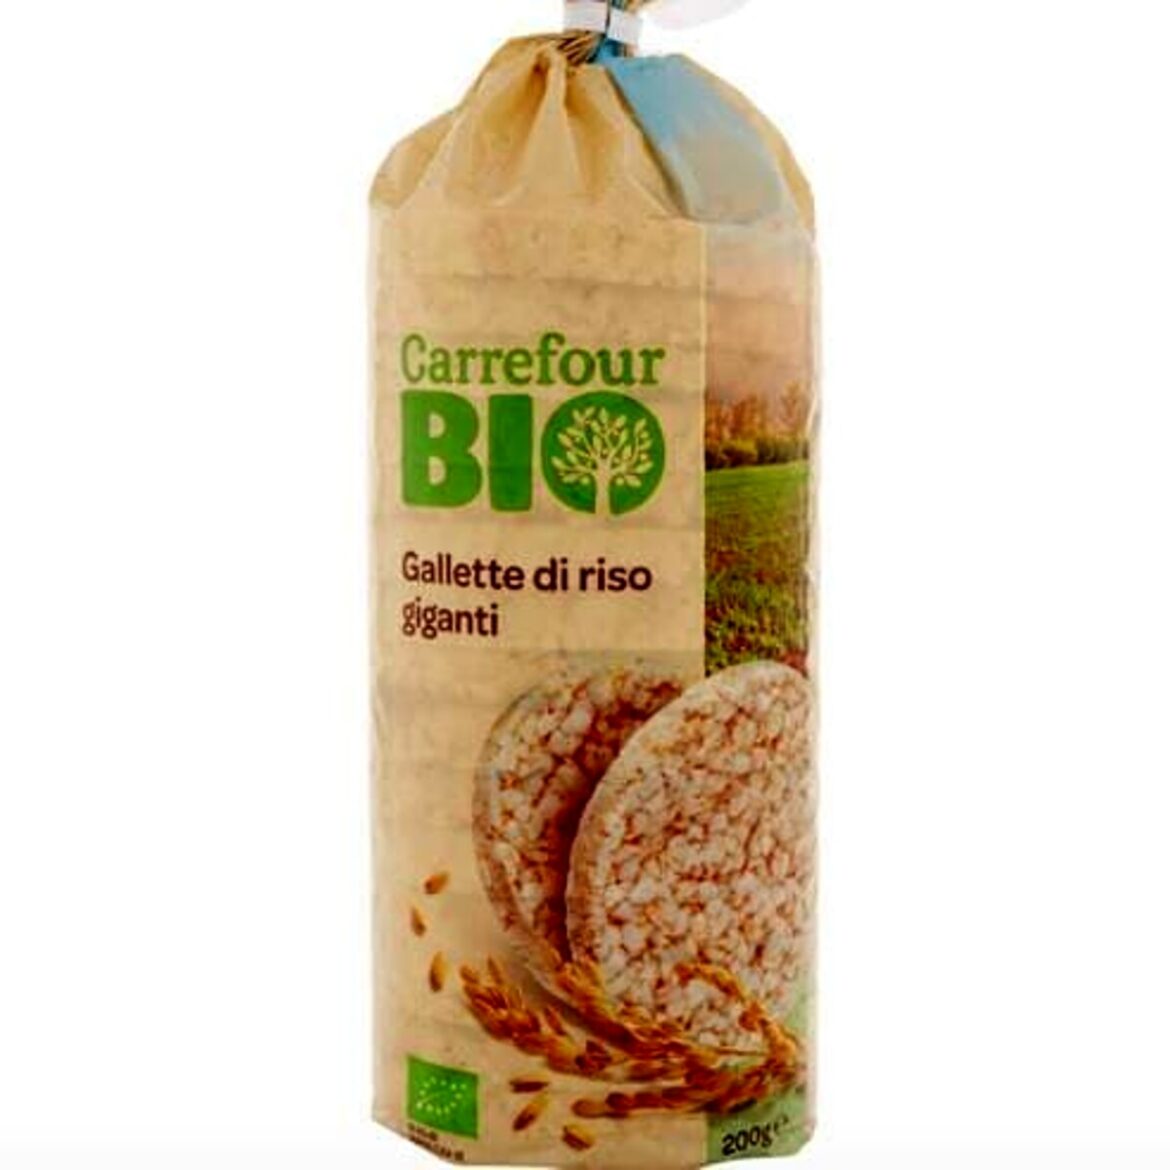 Allerta alimentare oggi: richiamo per Gallette di riso giganti Carrefour